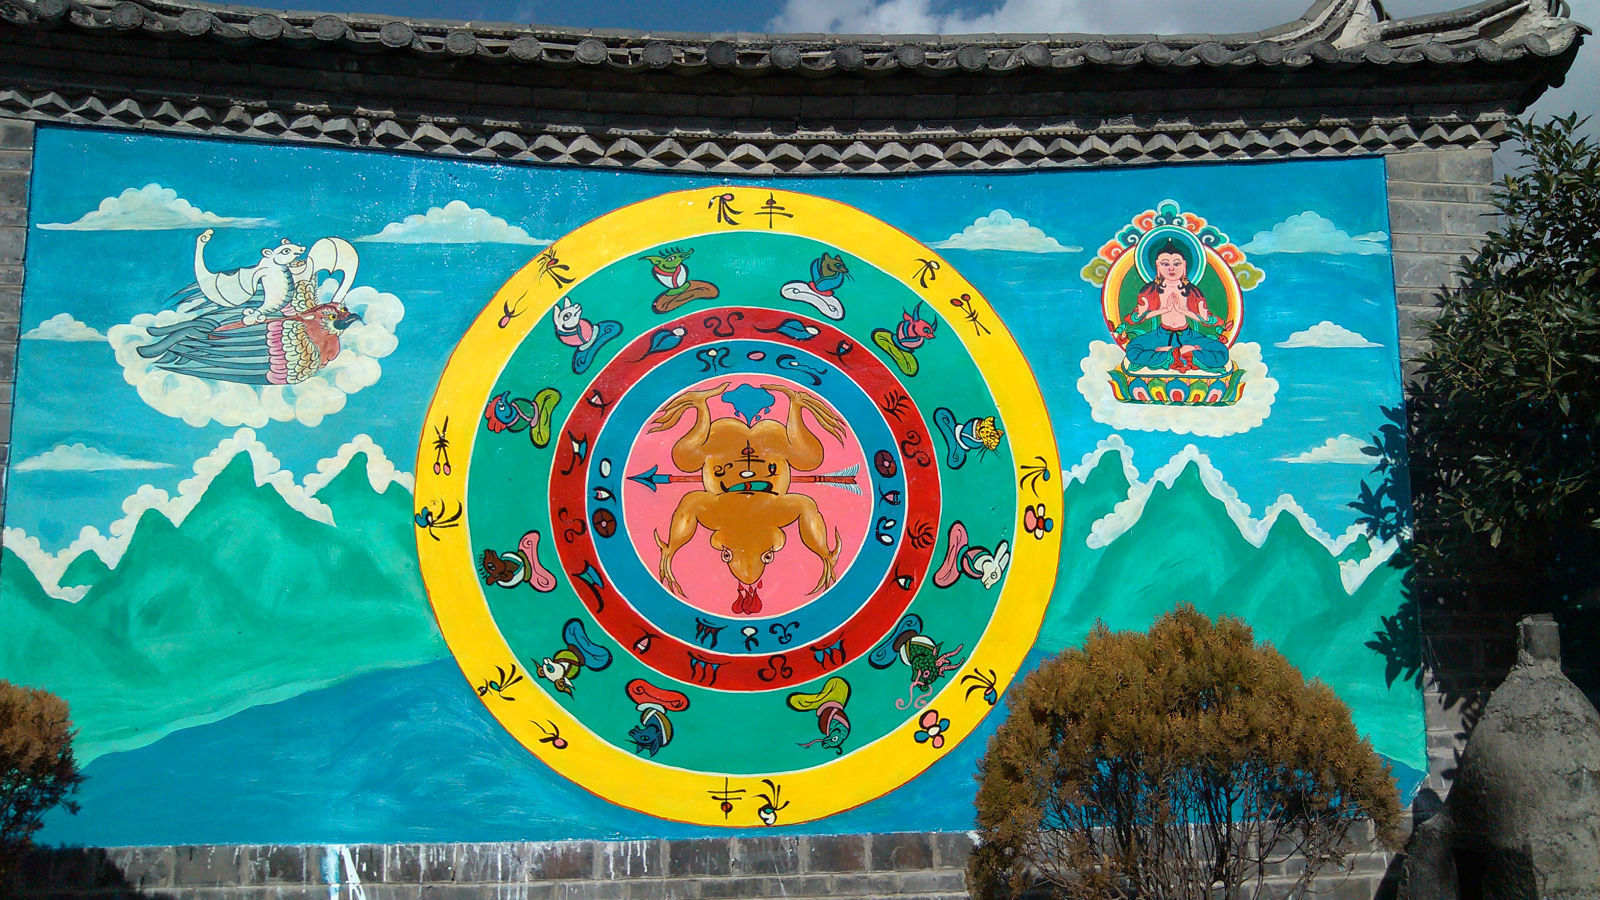 【携程攻略】丽江雪山峡谷演艺公园景点,纳西文化 几个特色民族特色